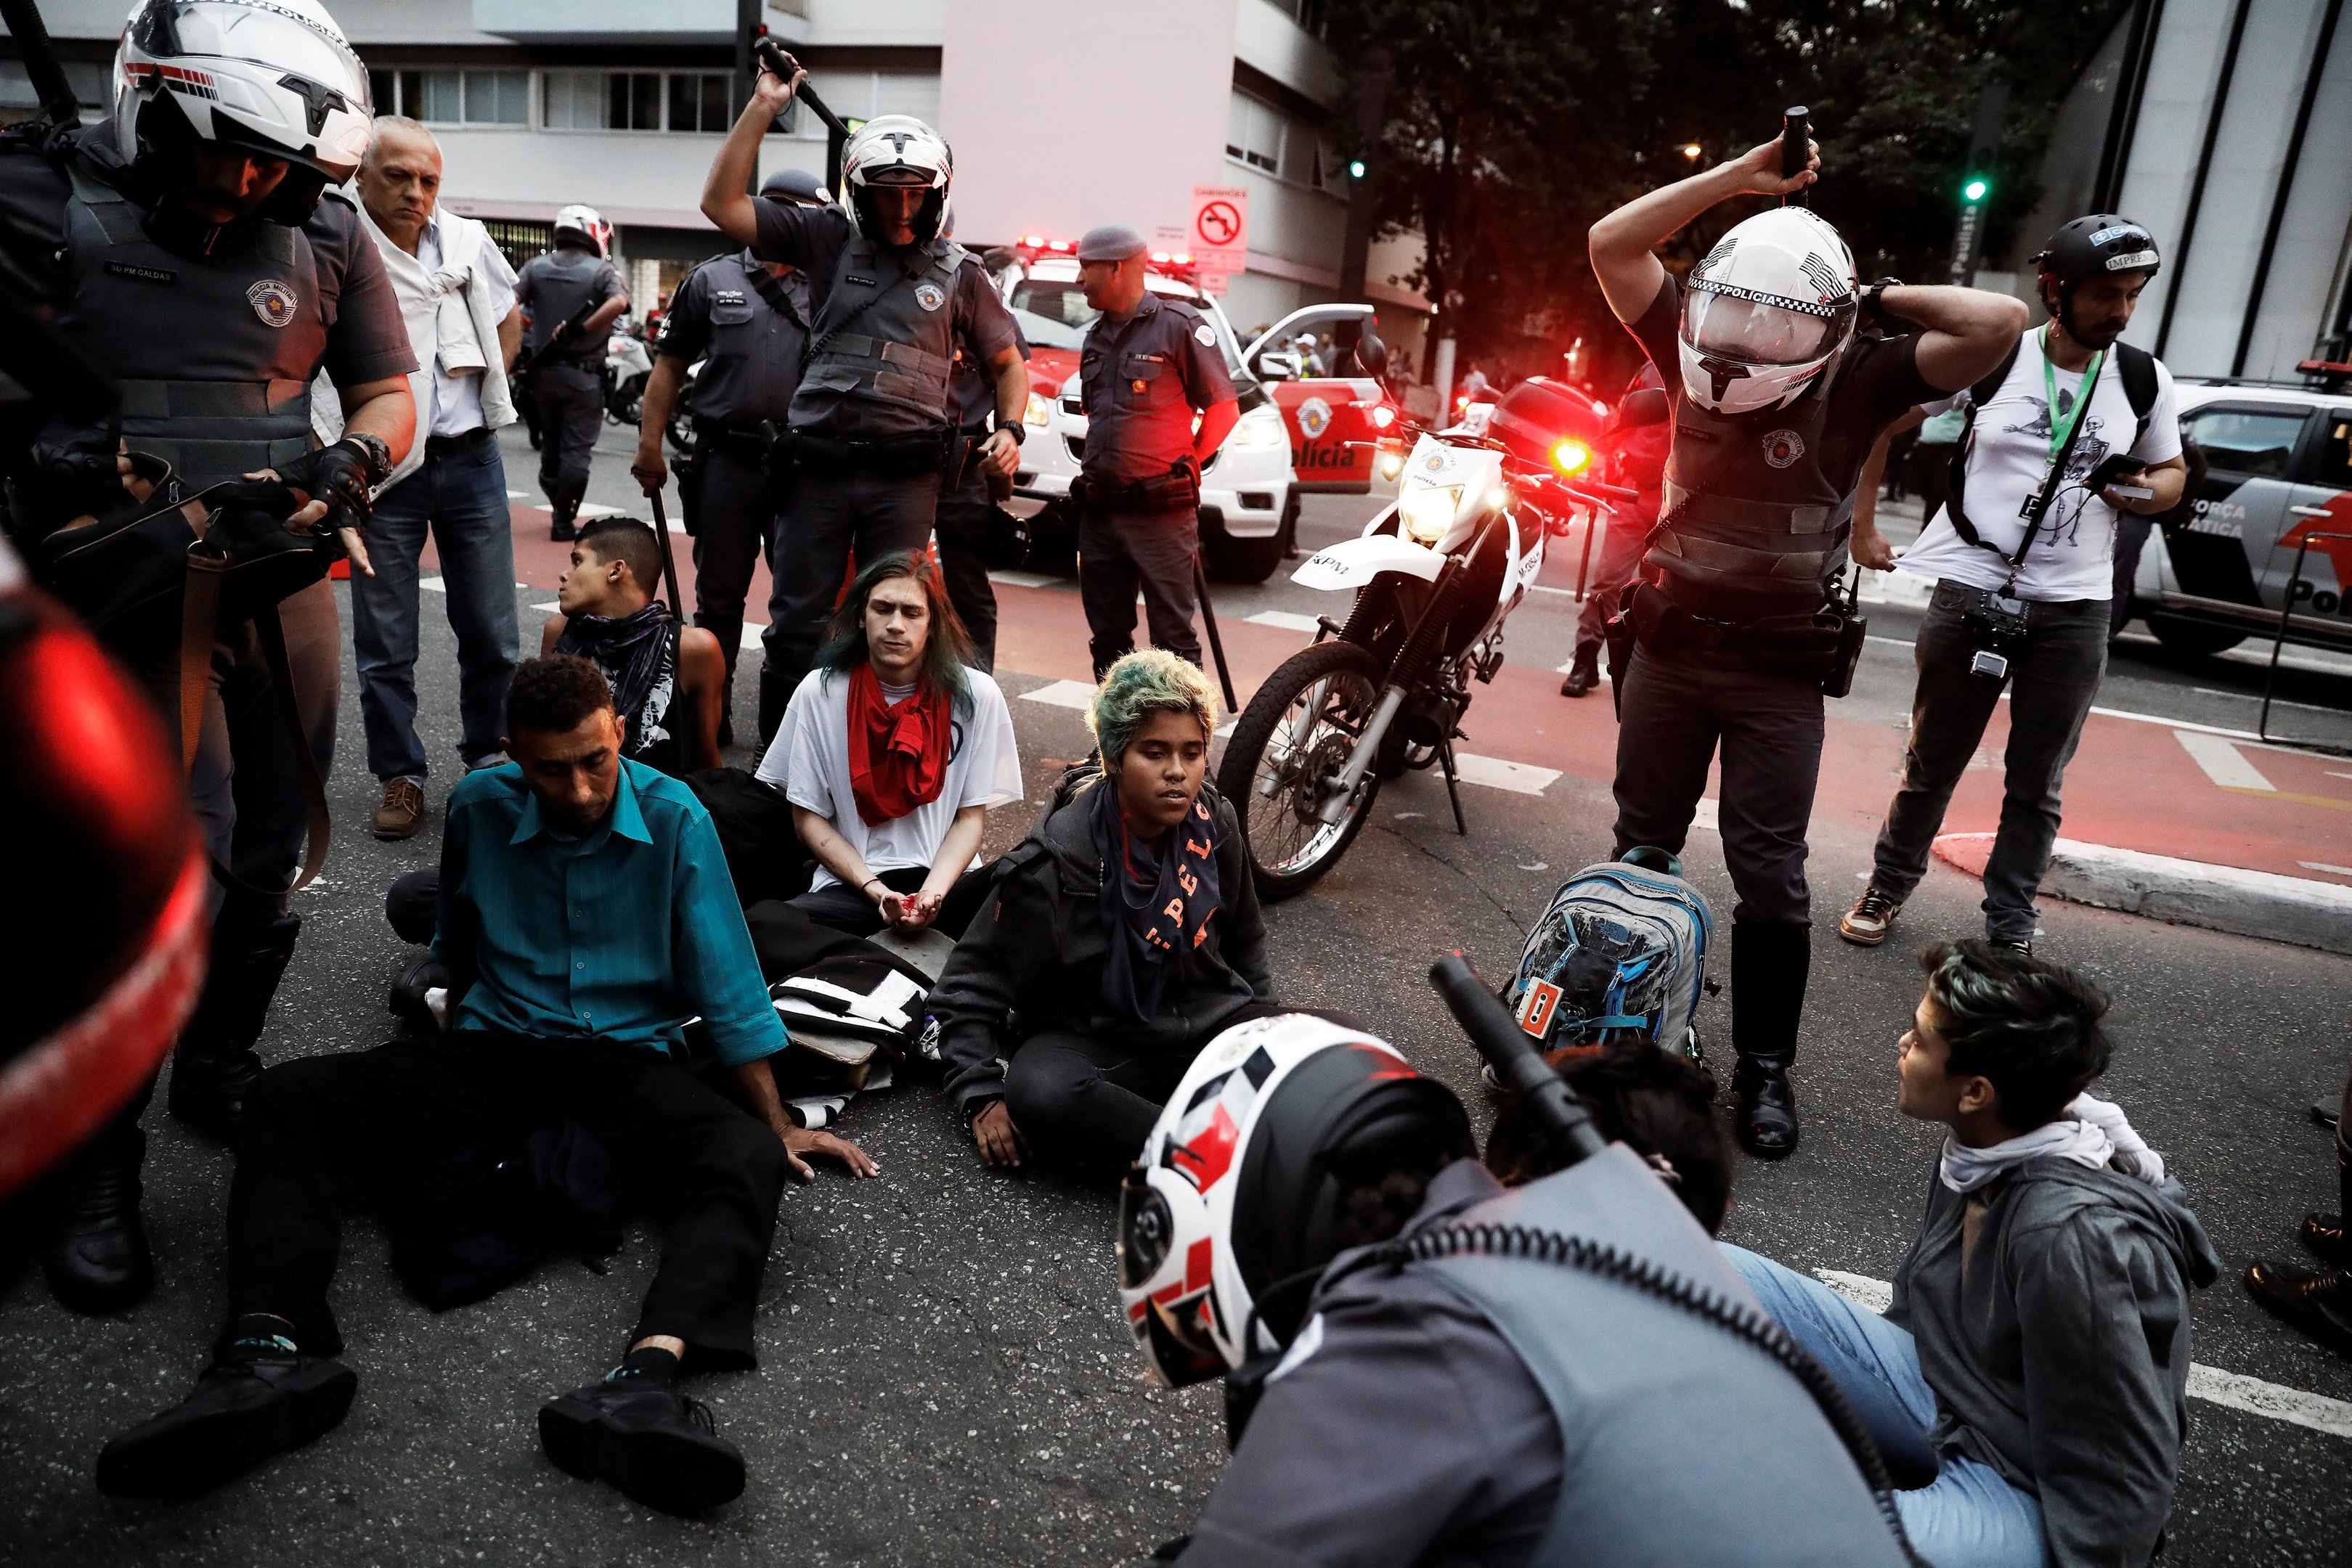 Manifestantes presos pela polícia na Avenida Paulista durante protesto contra o presidente Temer em São Paulo, dia 30/06/2017